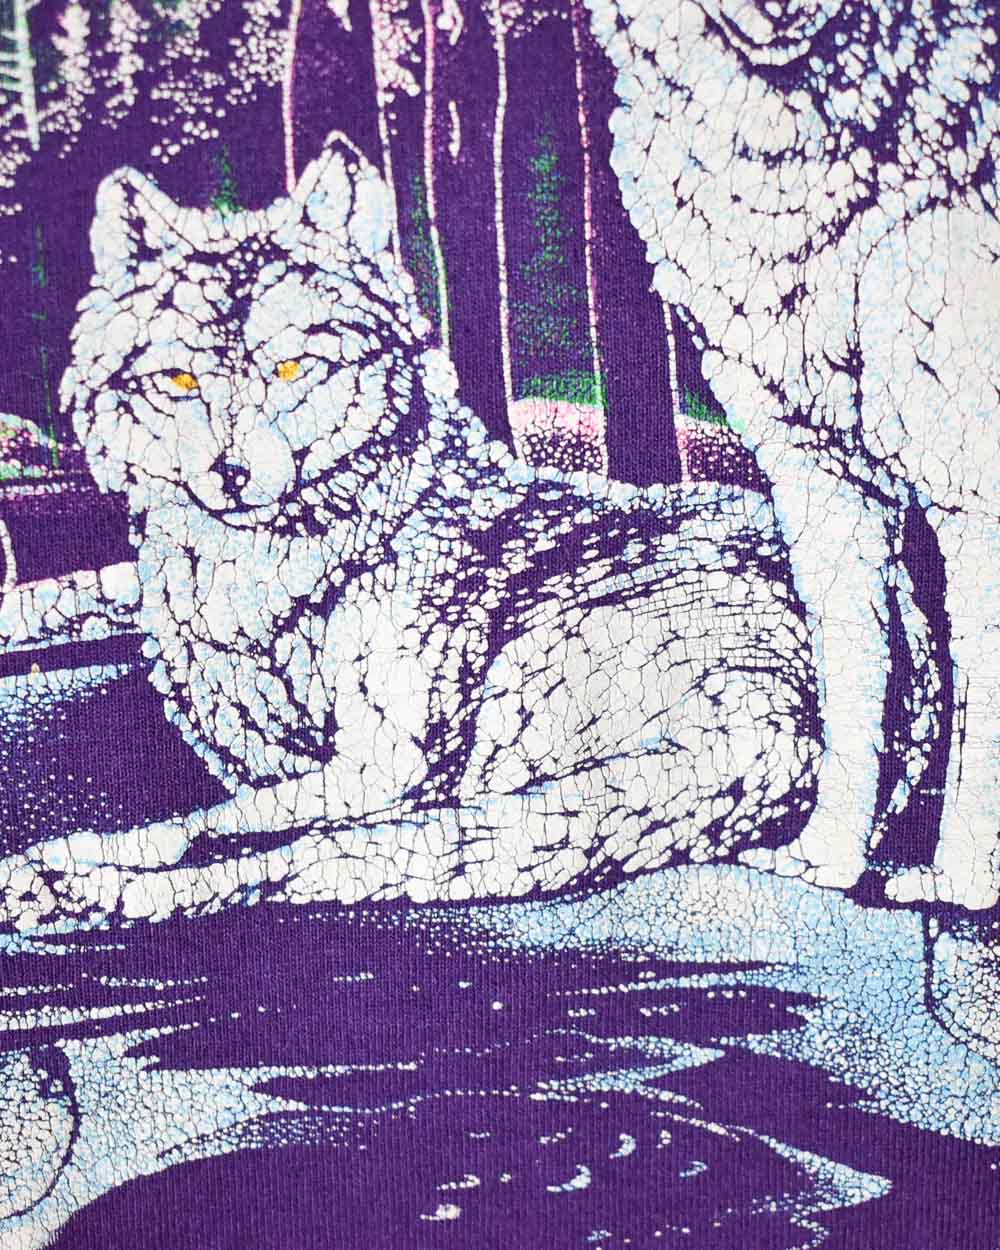 Purple Wolves Single Stitch T-Shirt - X-Large